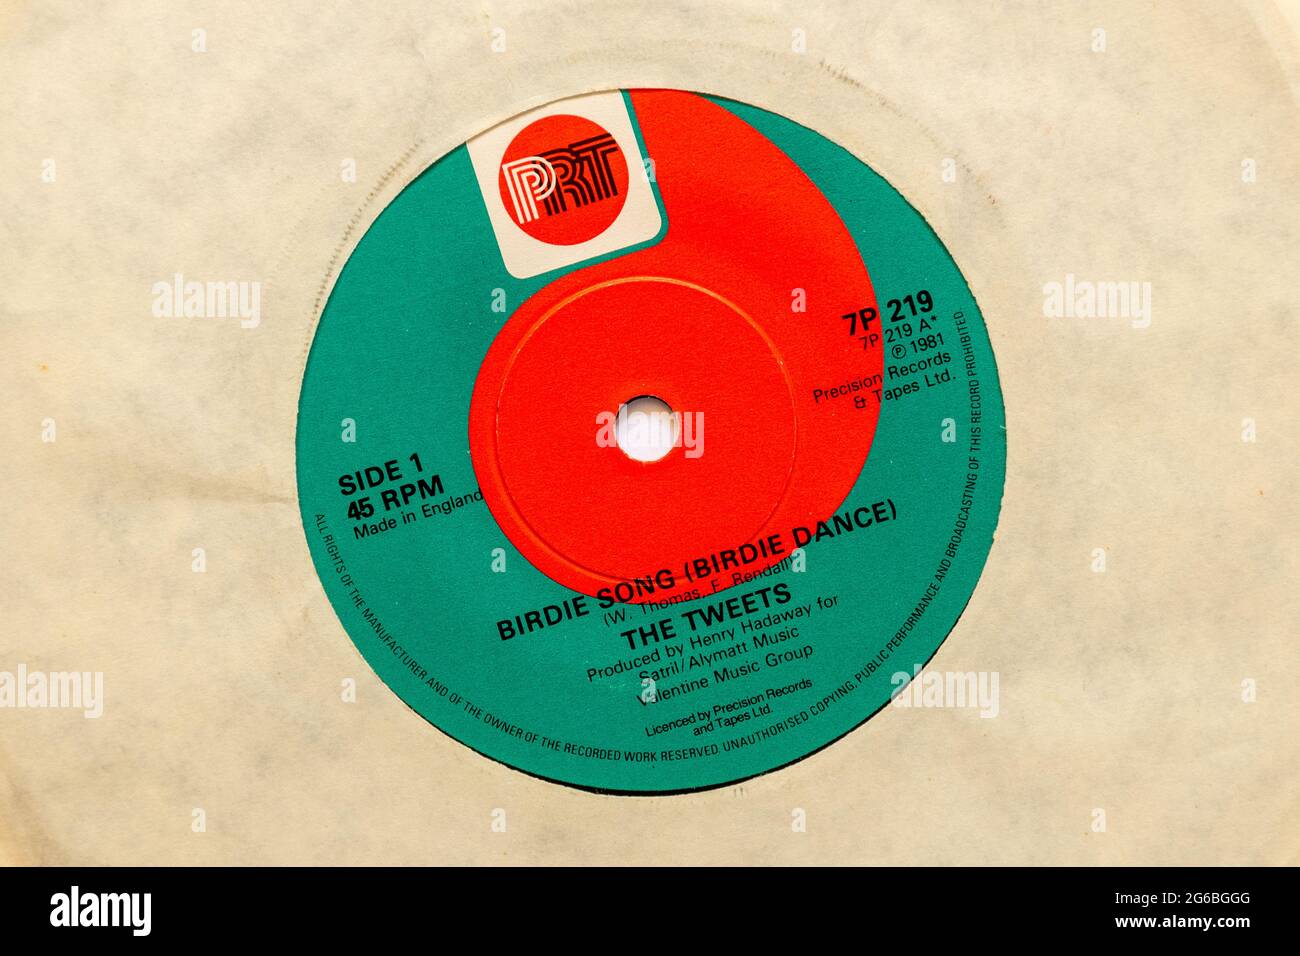 Birdie Song (Birdie Dance) von den Tweets, ein Stock-Foto der 7' Single Vinyl 45 U/min Platte im Cover Stockfoto